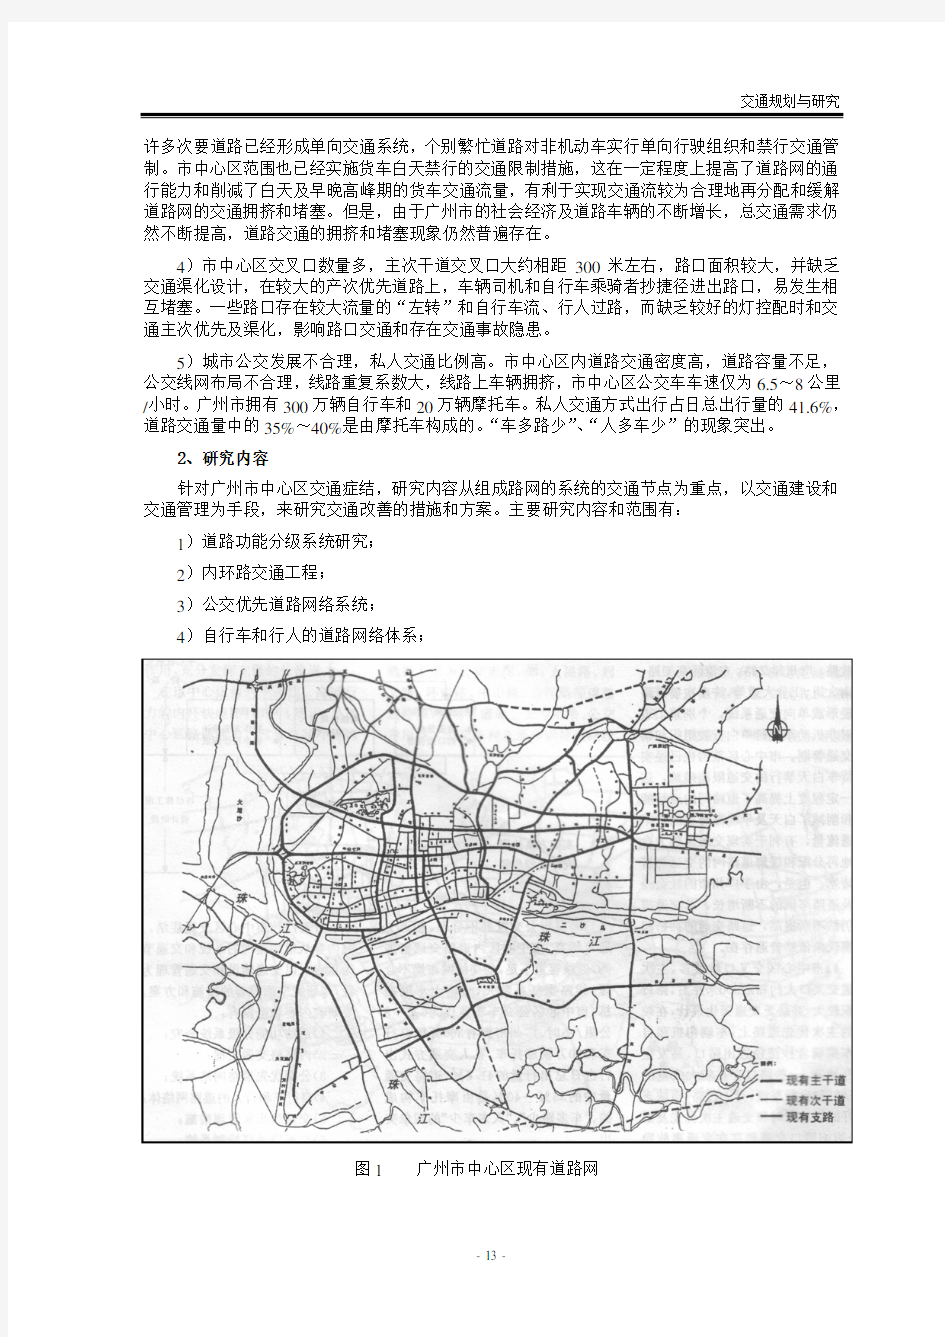 03广州市中心区交通改善实施方案研究